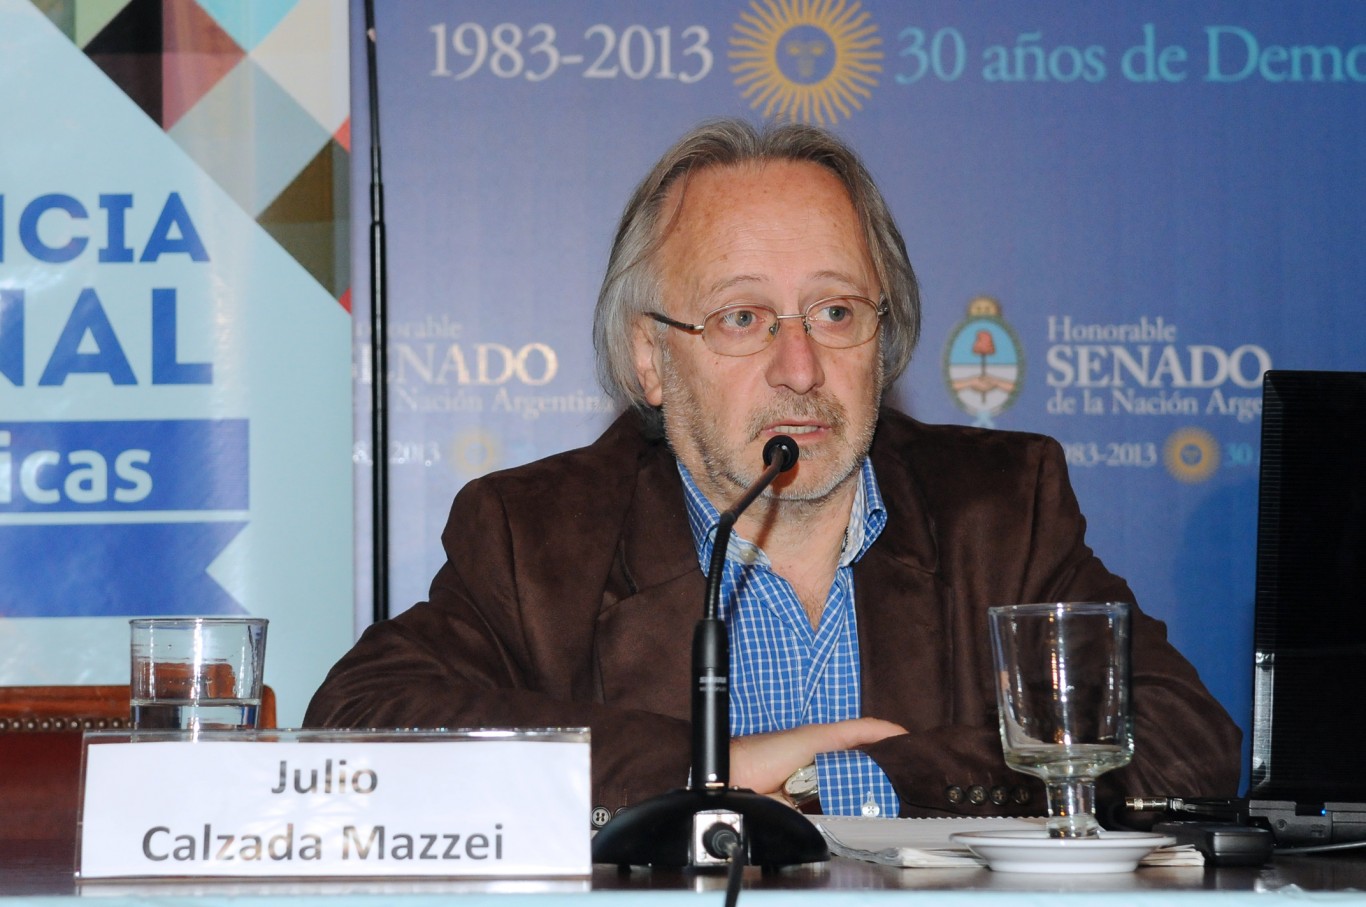 "La guerra contra las drogas tiene un enemigo imaginario", Julio Calzada Mazzei